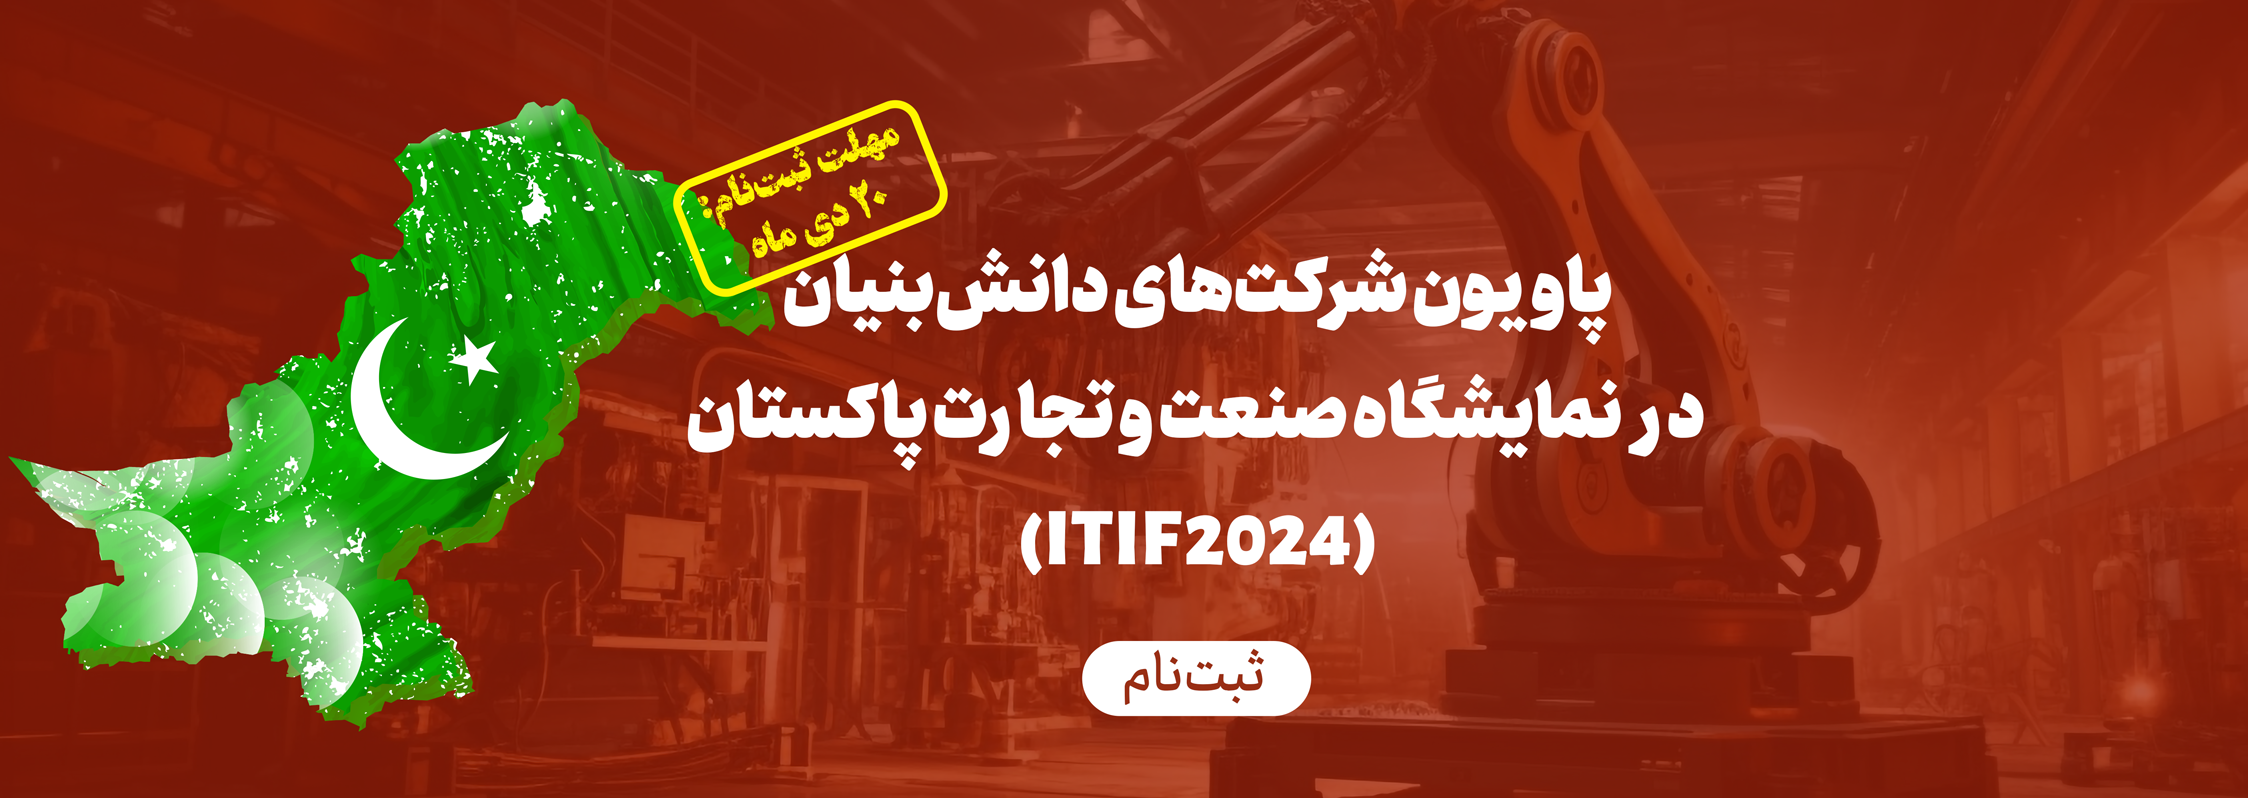 برپایی پاويون شرکت‌هاي دانش‌بنيان ايراني در نمايشگاه صنعت و تجارت پاکستان (ITIF 2024)